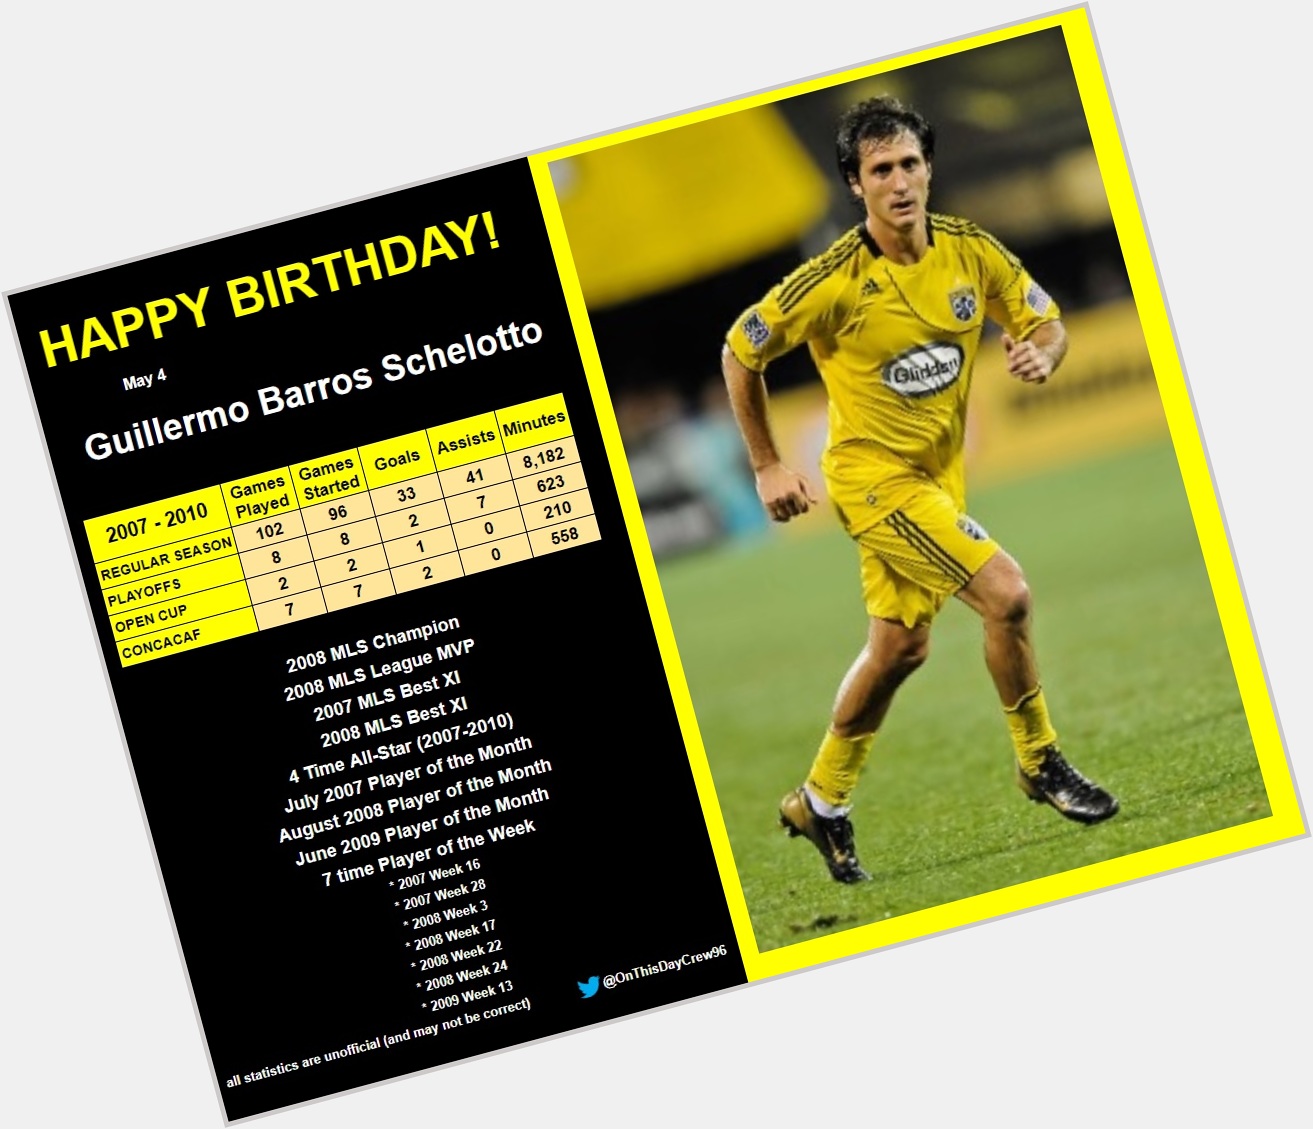 5-4
Happy Birthday, Guillermo Barros Schelotto!  